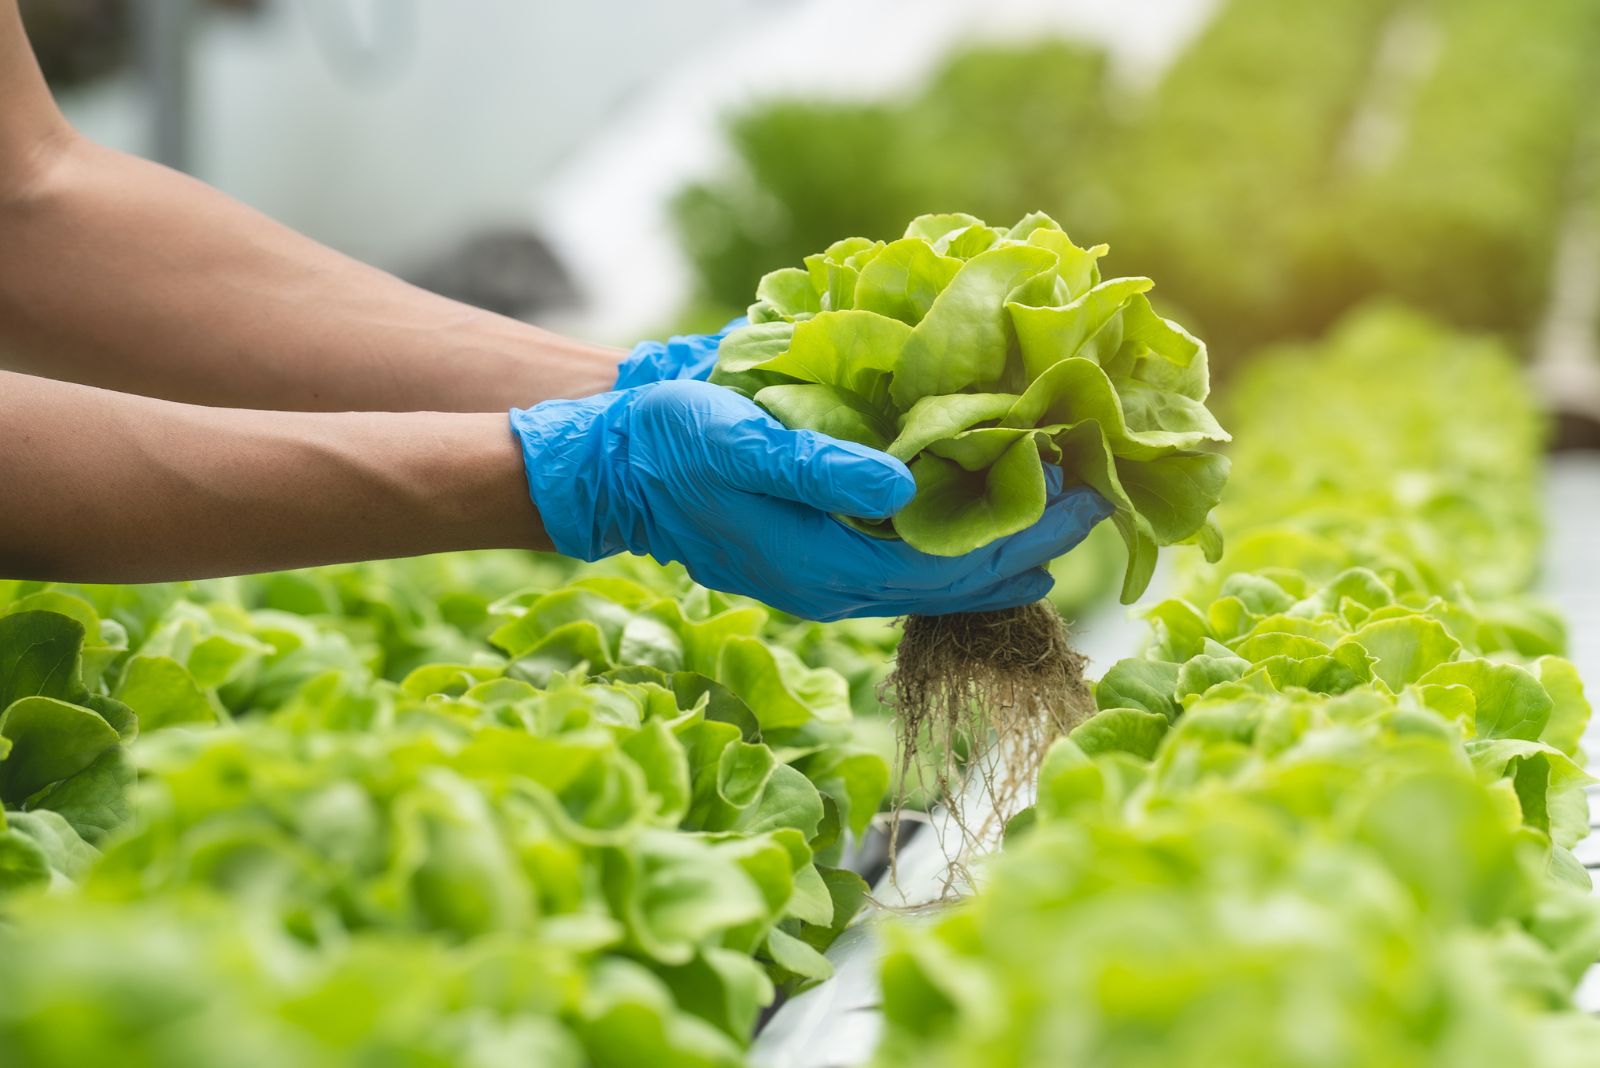 a woman picks fresh lettuce